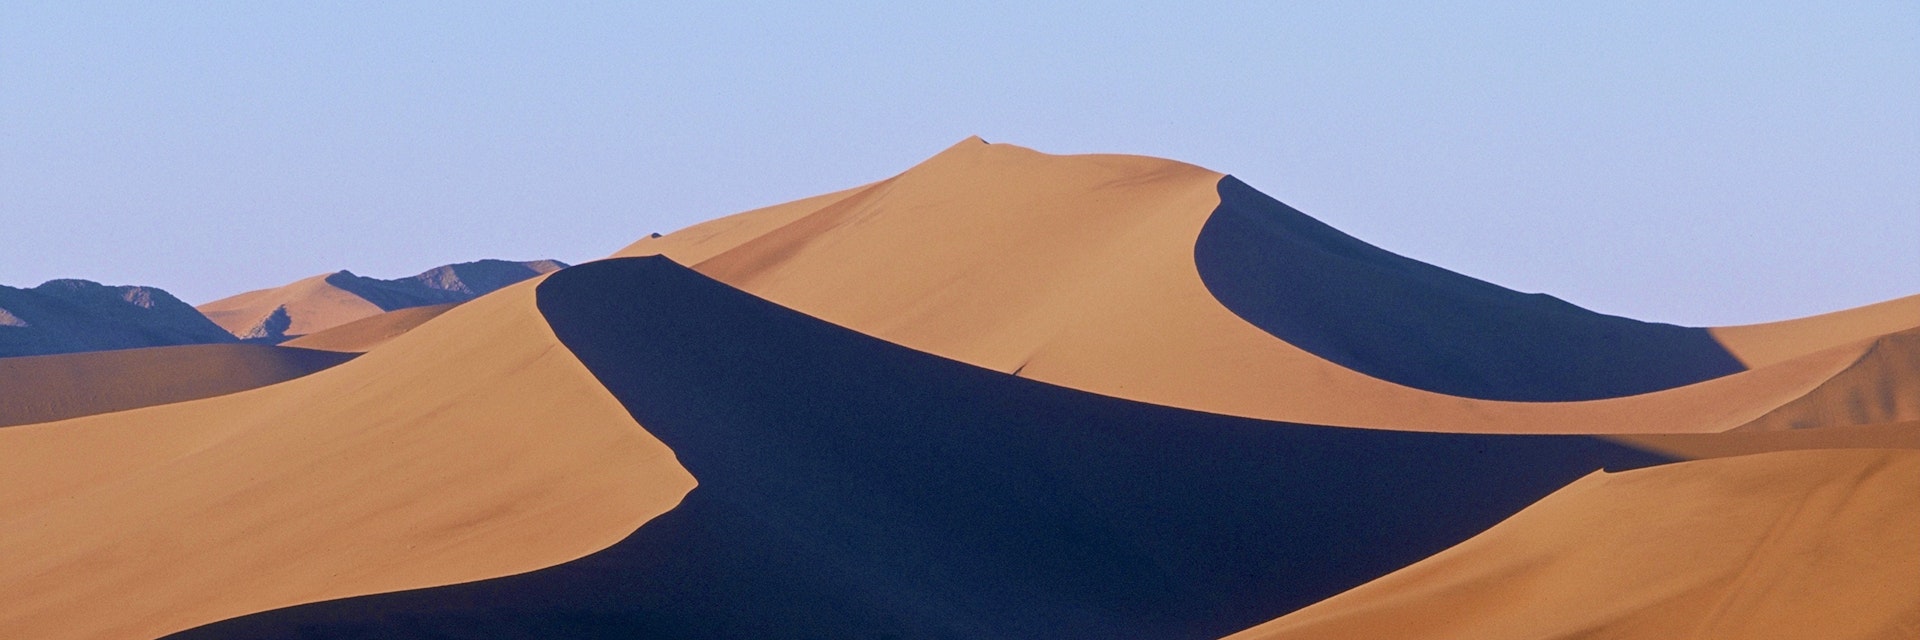 Giant sand dunes in the Namib Desert